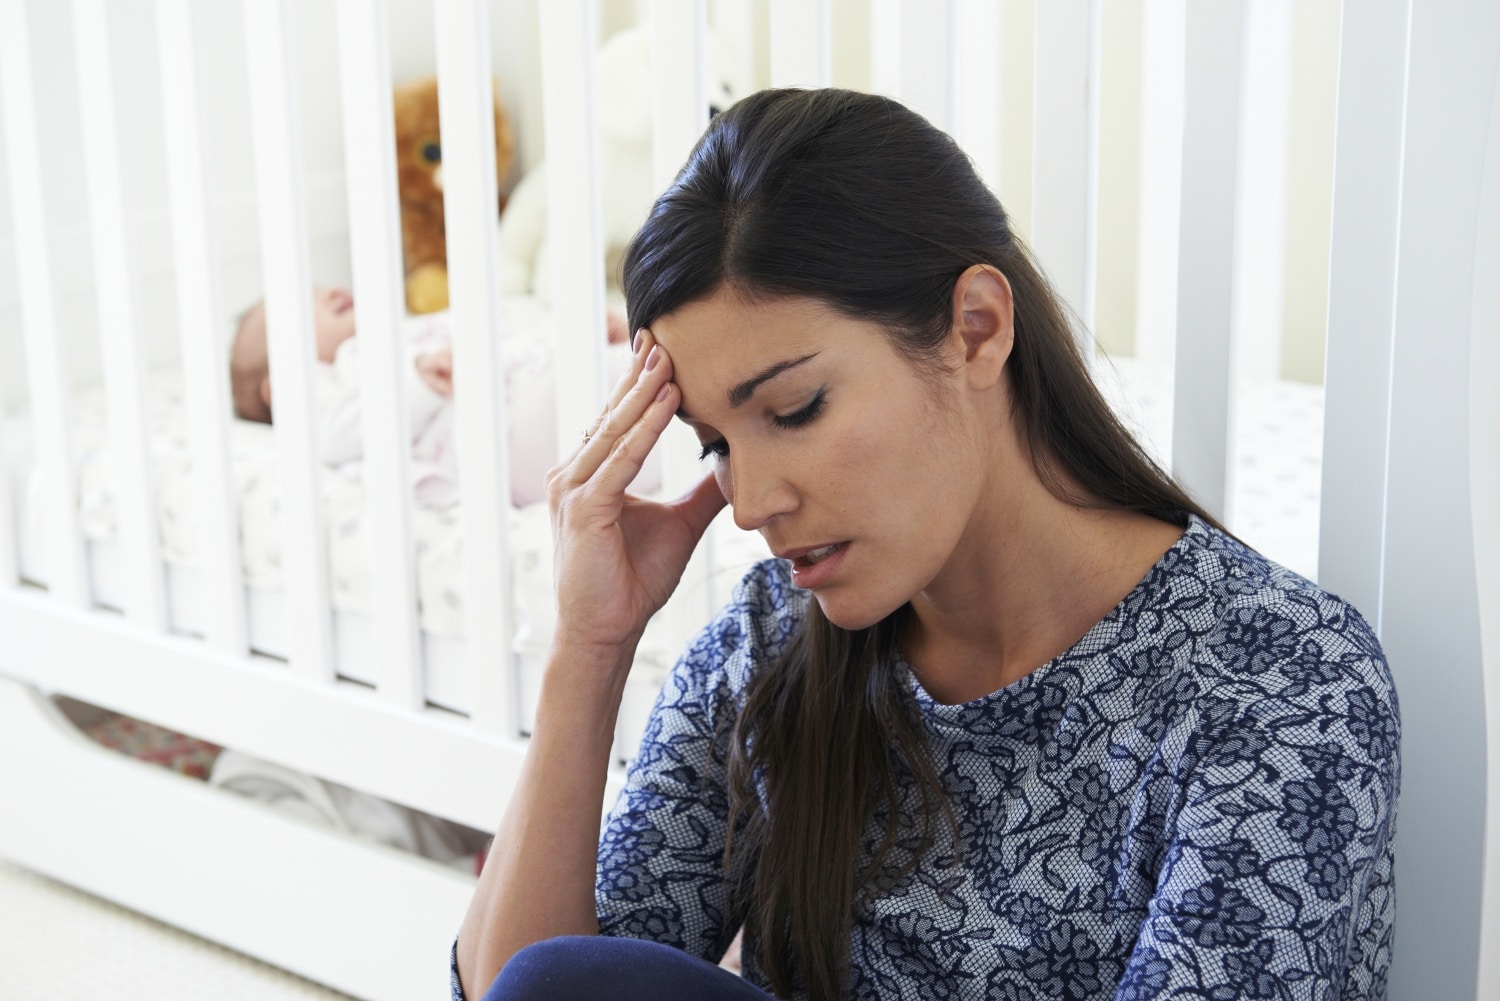 Hagyod sírni? 5 bűn, amit a kisbabád ellen elkövethetsz